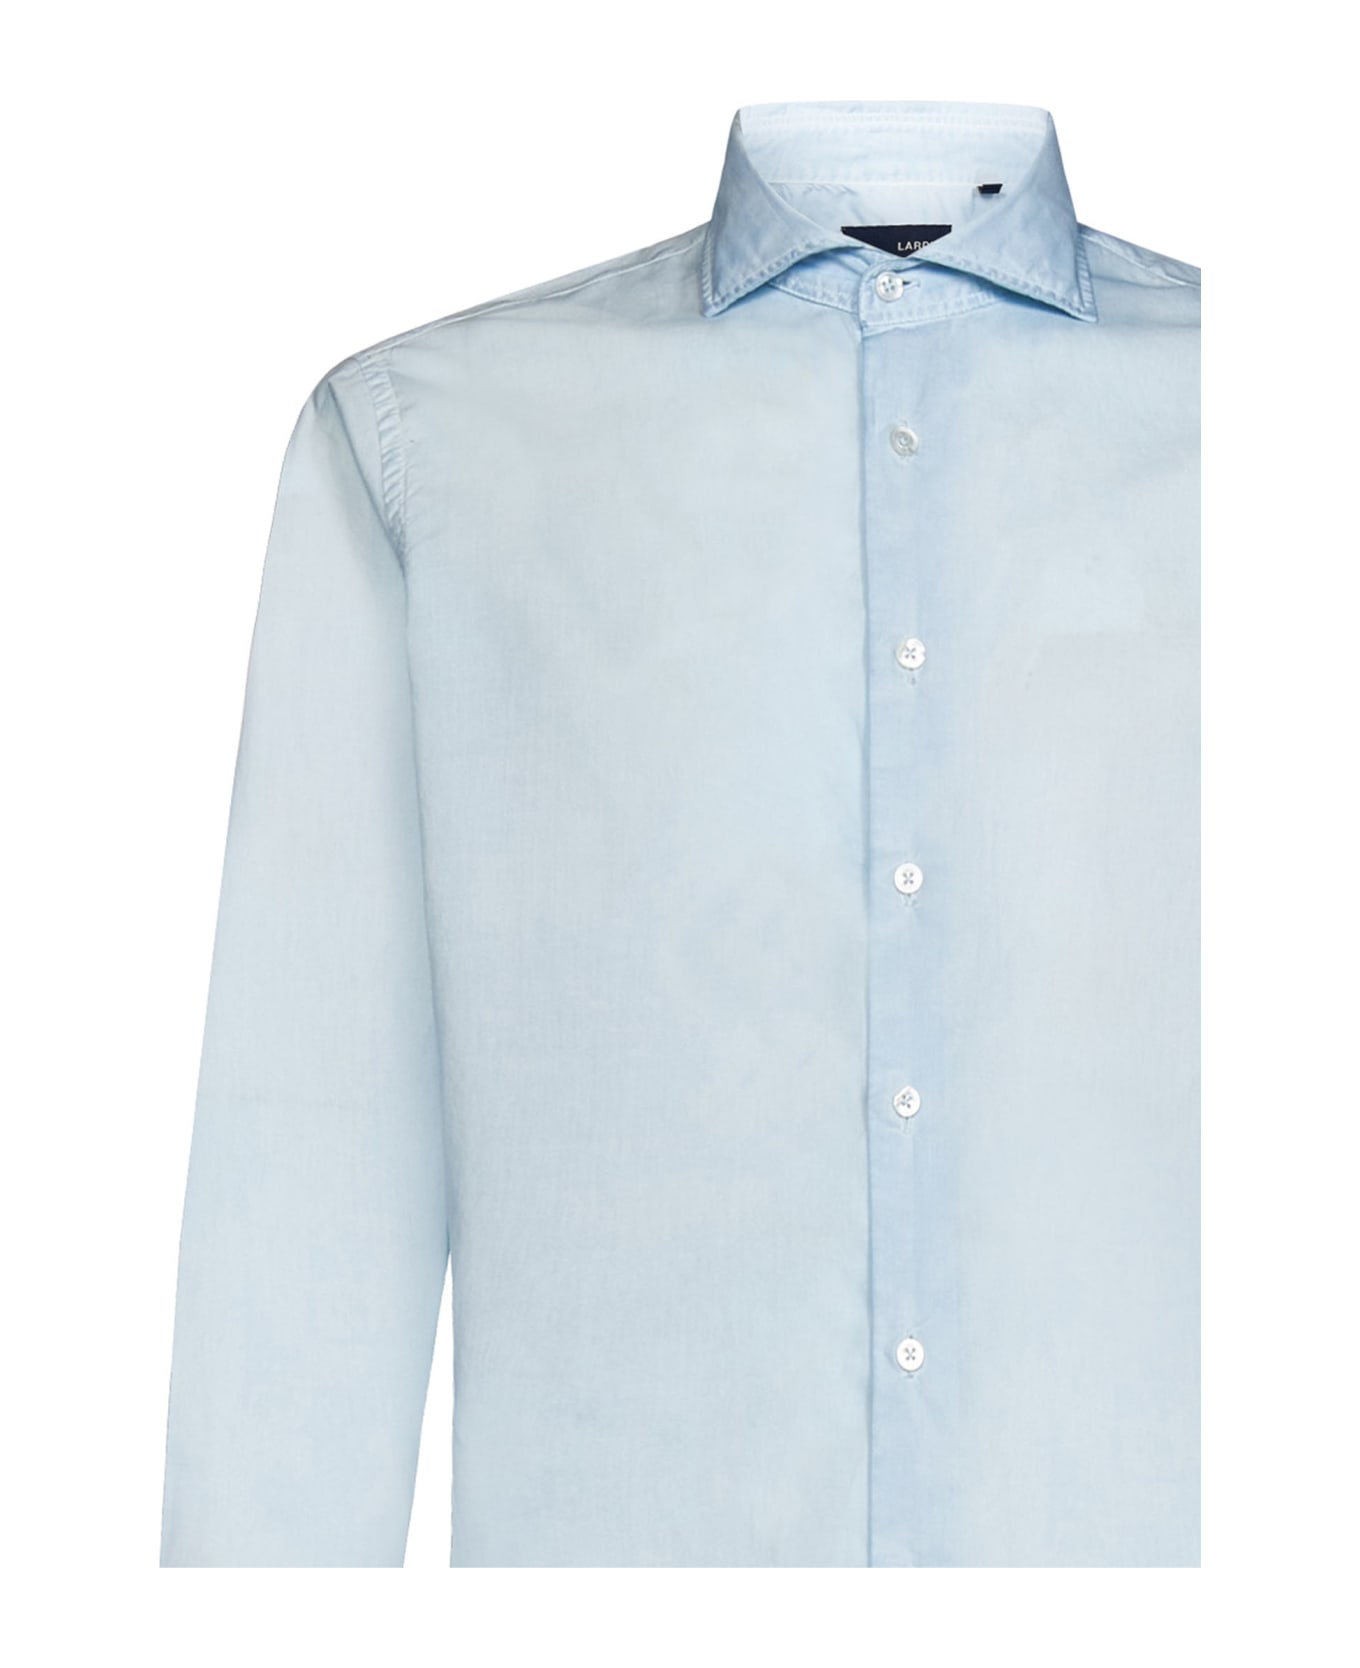 Lardini Shirt - Light blue